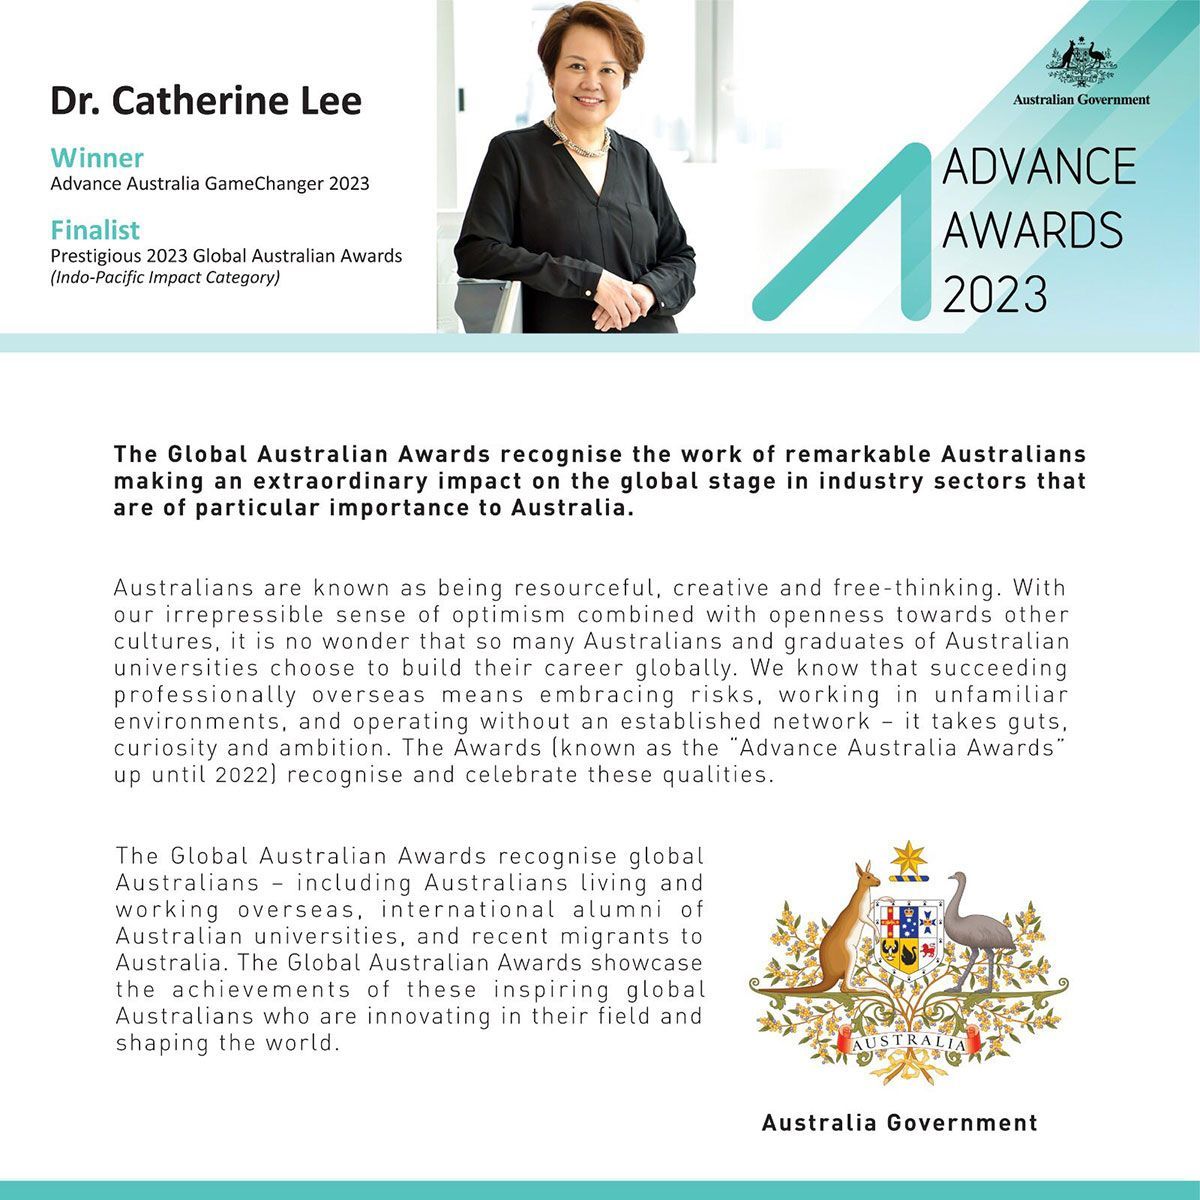 a poster for dr. catherine lee winner of the advance australia gamechanger 2023